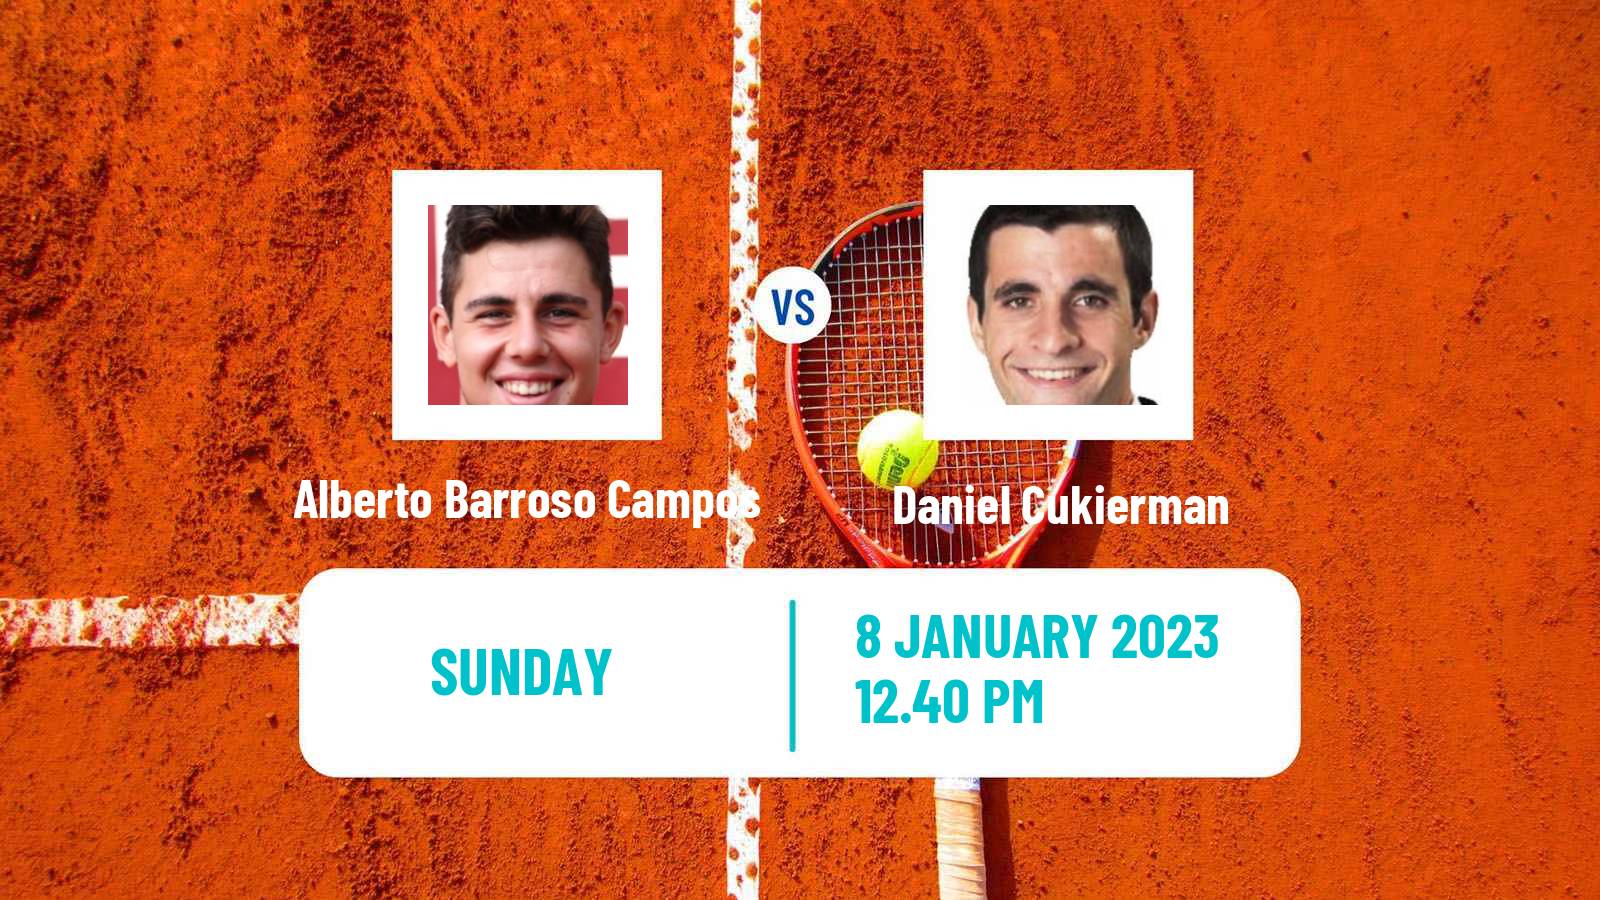 Tennis ATP Challenger Alberto Barroso Campos - Daniel Cukierman